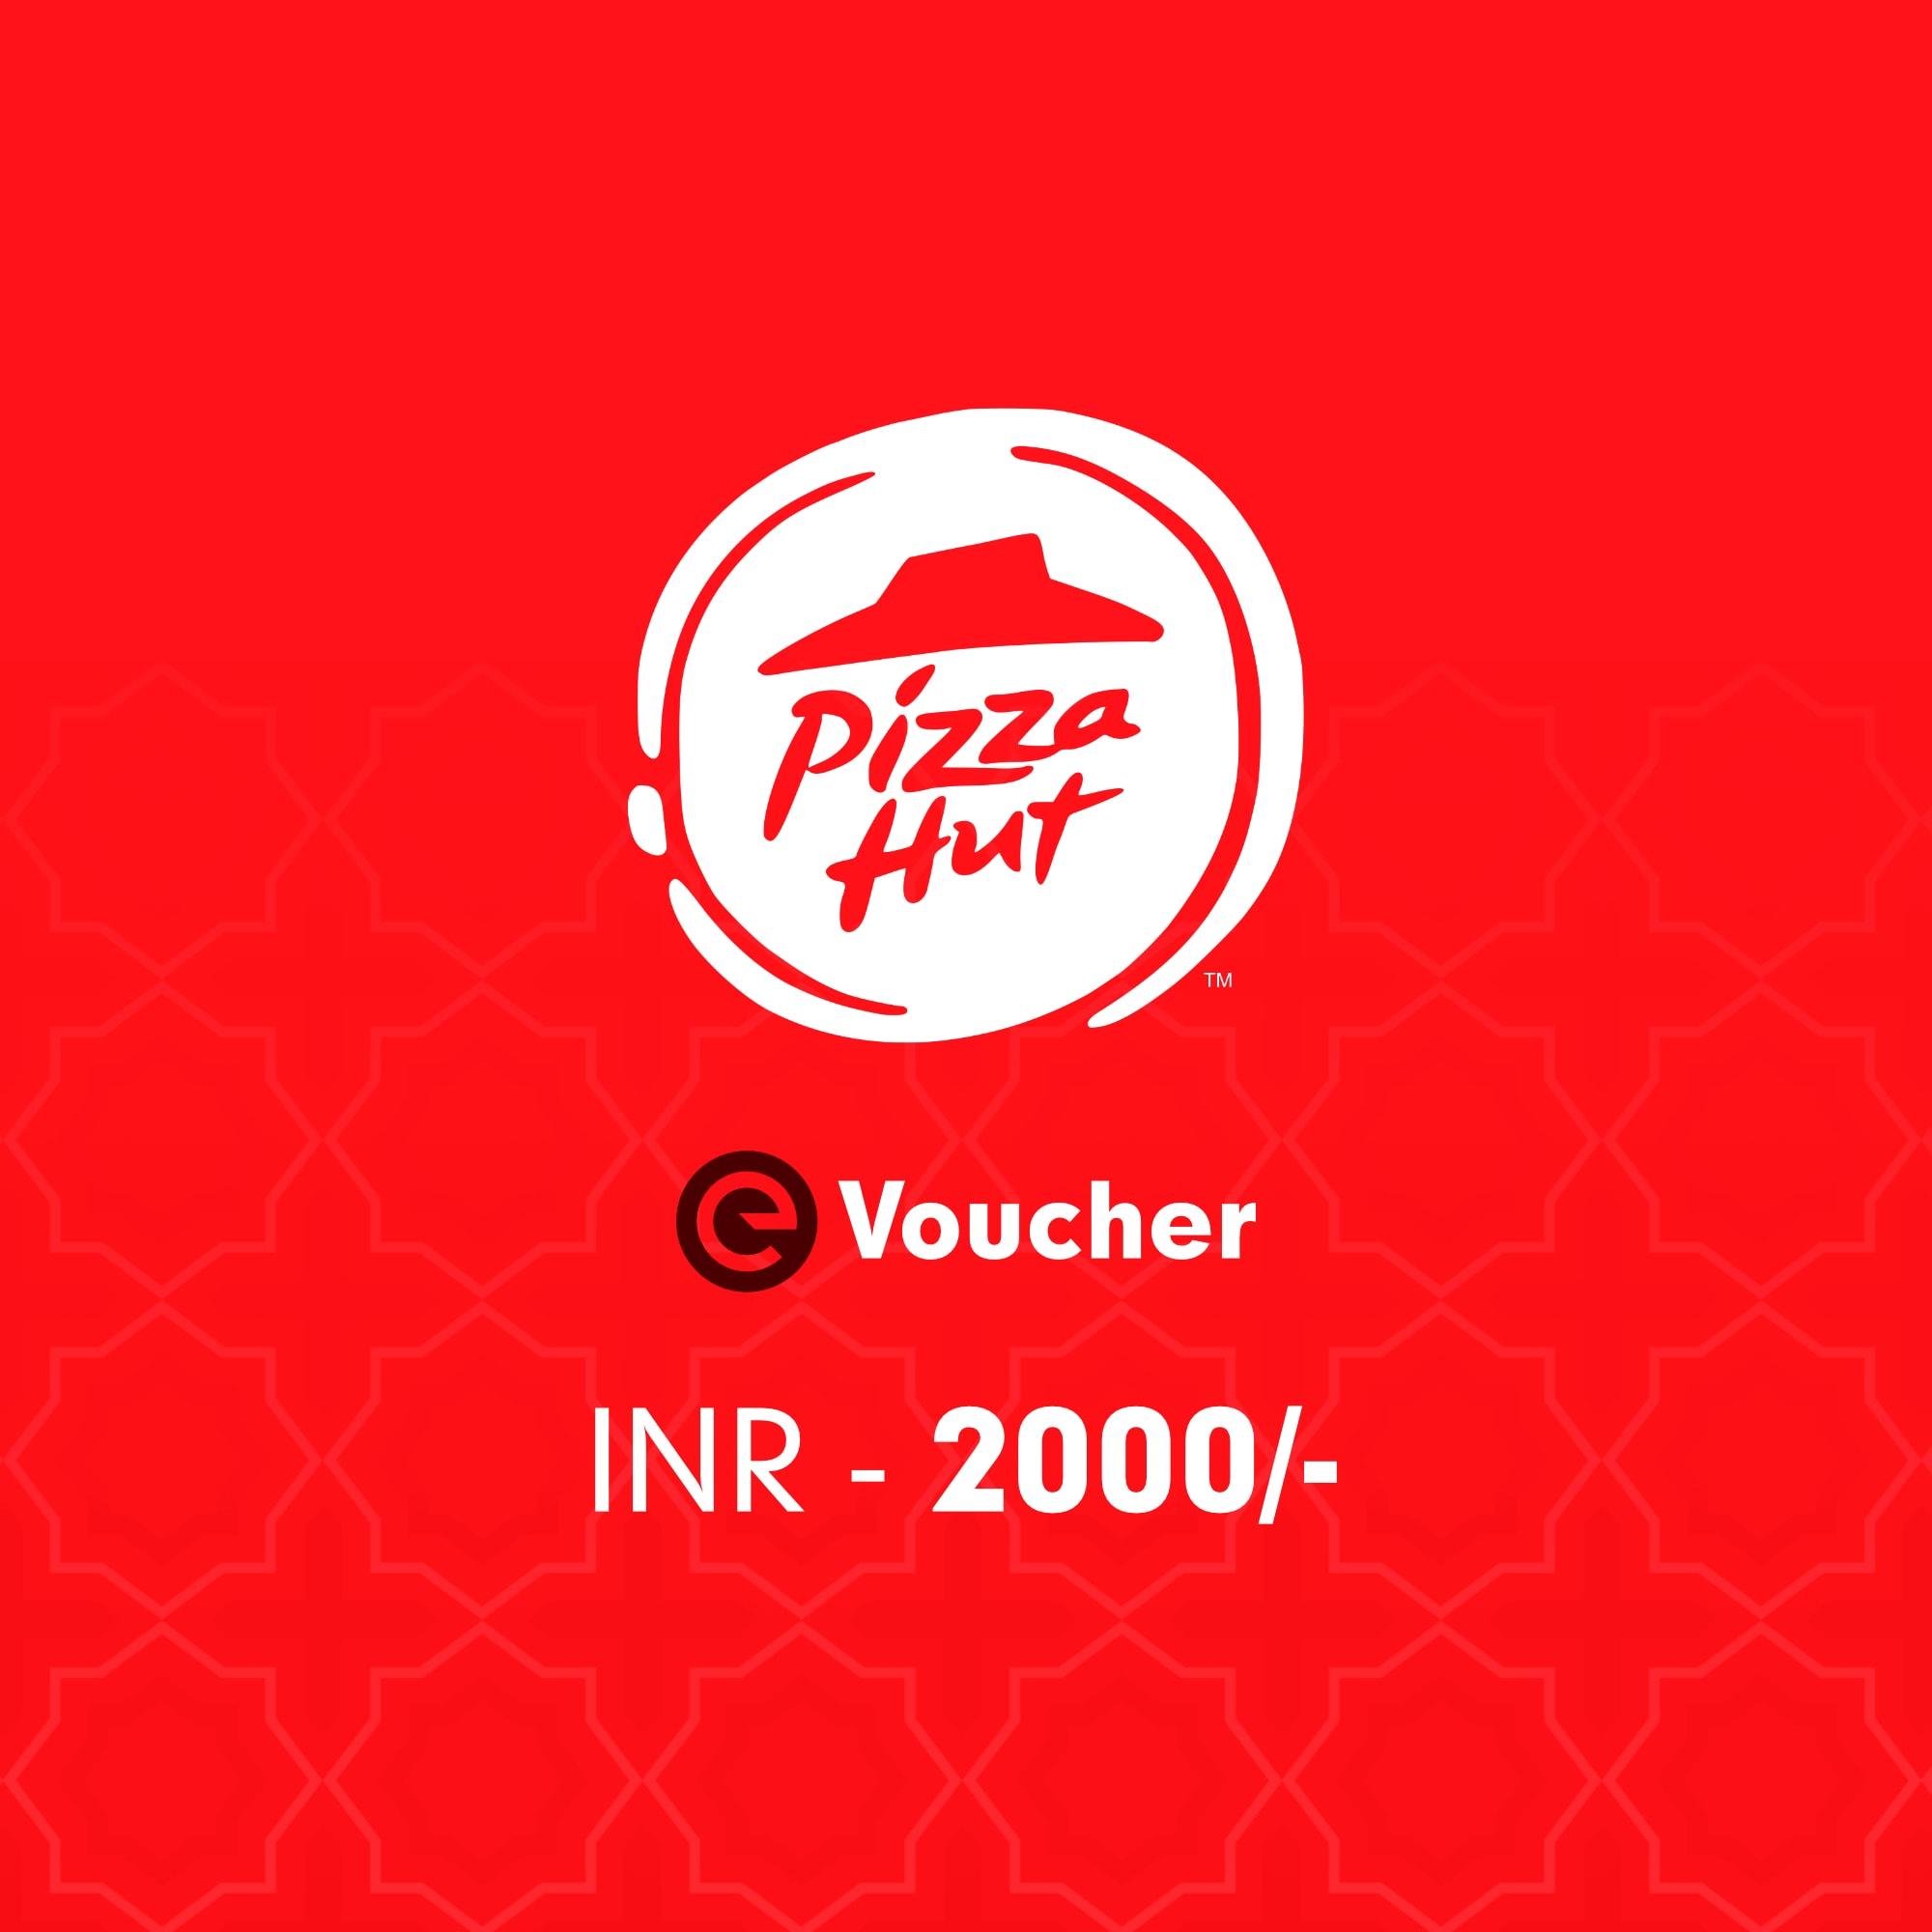 Pizza Hut E-Voucher Rs. 2000